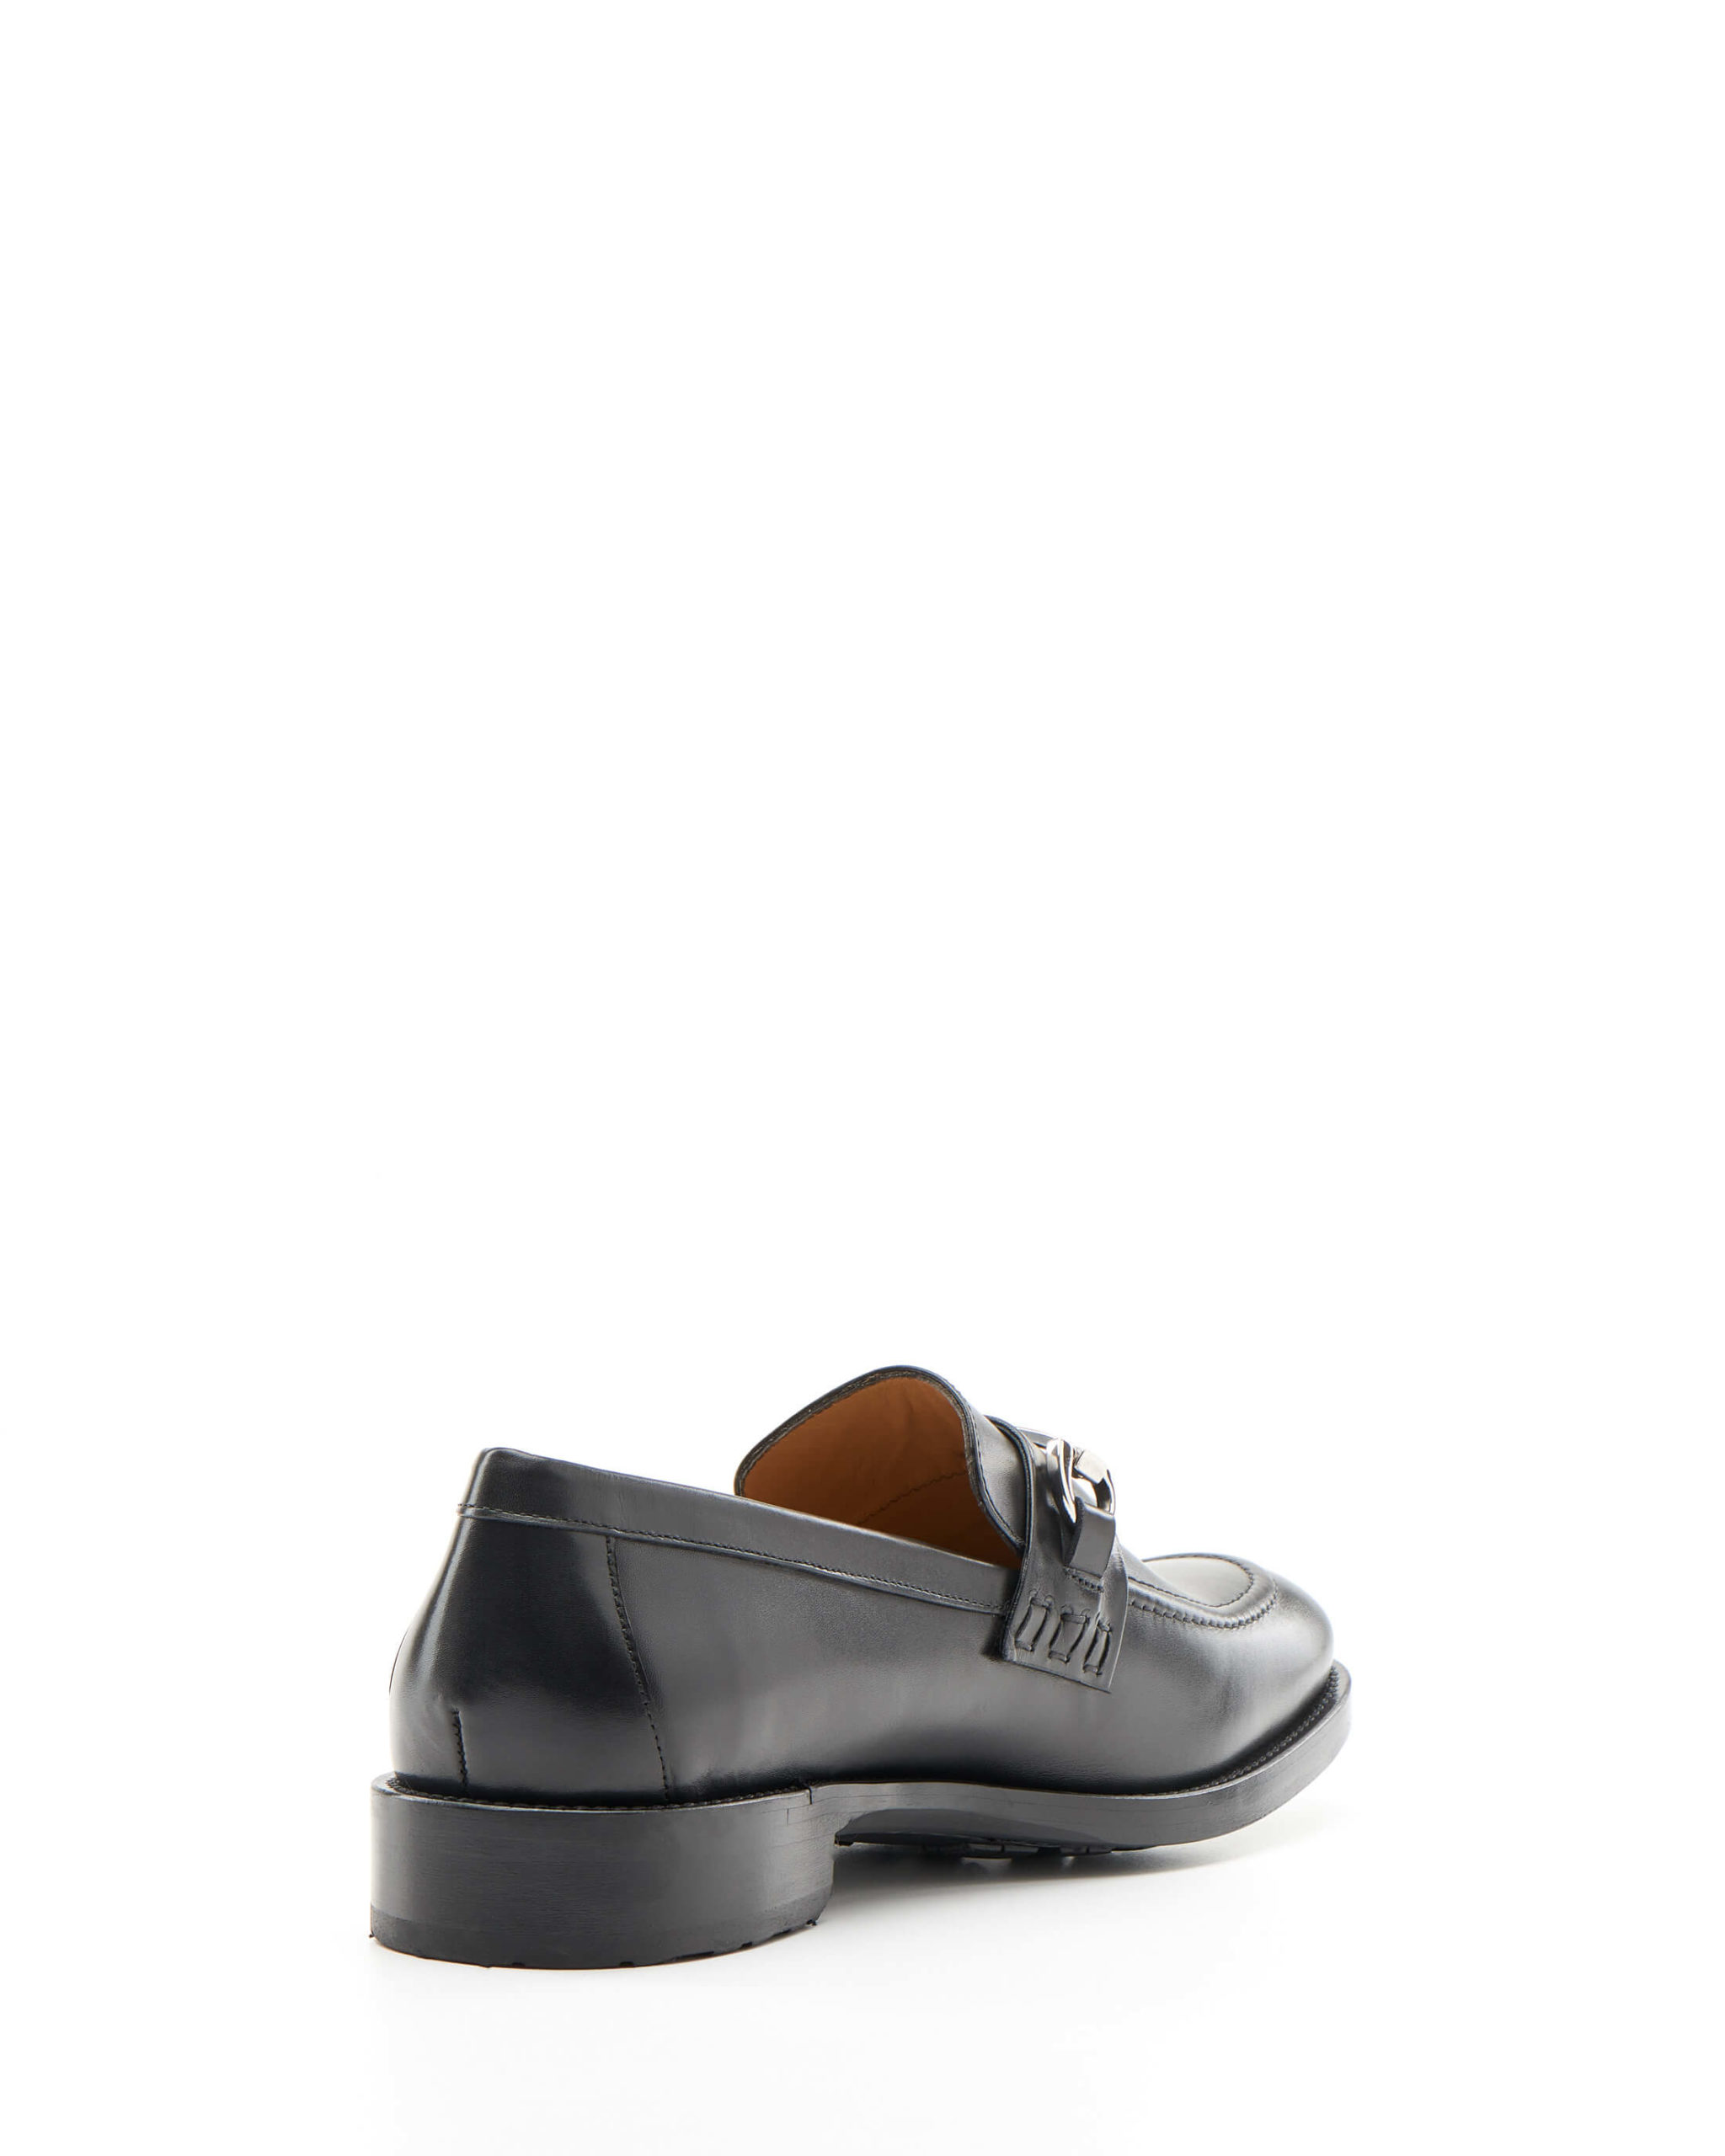 Luis Onofre Portuguese Shoes FW22 – HS0805_01 – NITRO BLACK-3